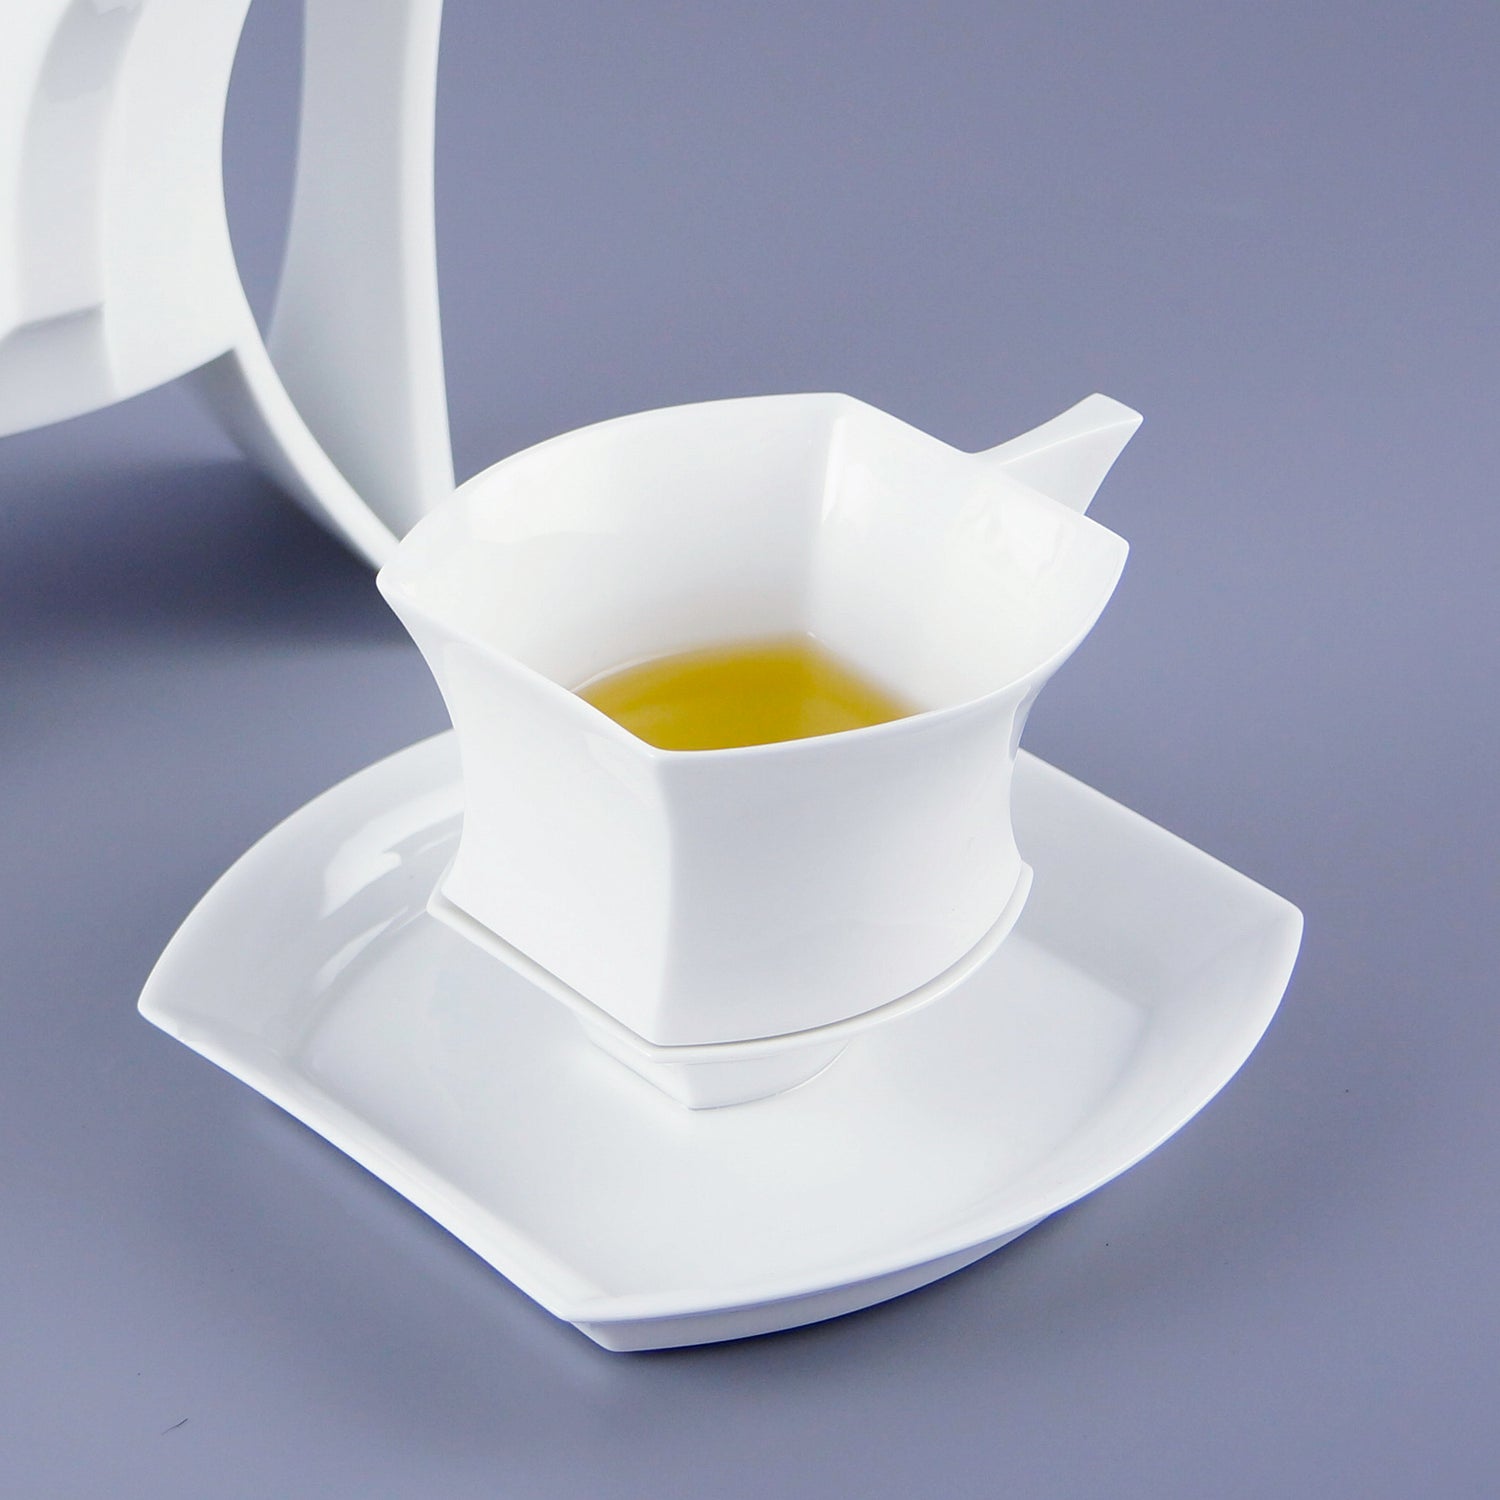 八方新氣藝術瓷器 王俠軍設計 白瓷帝國記憶 咖啡杯盤 茶杯盤組 方版